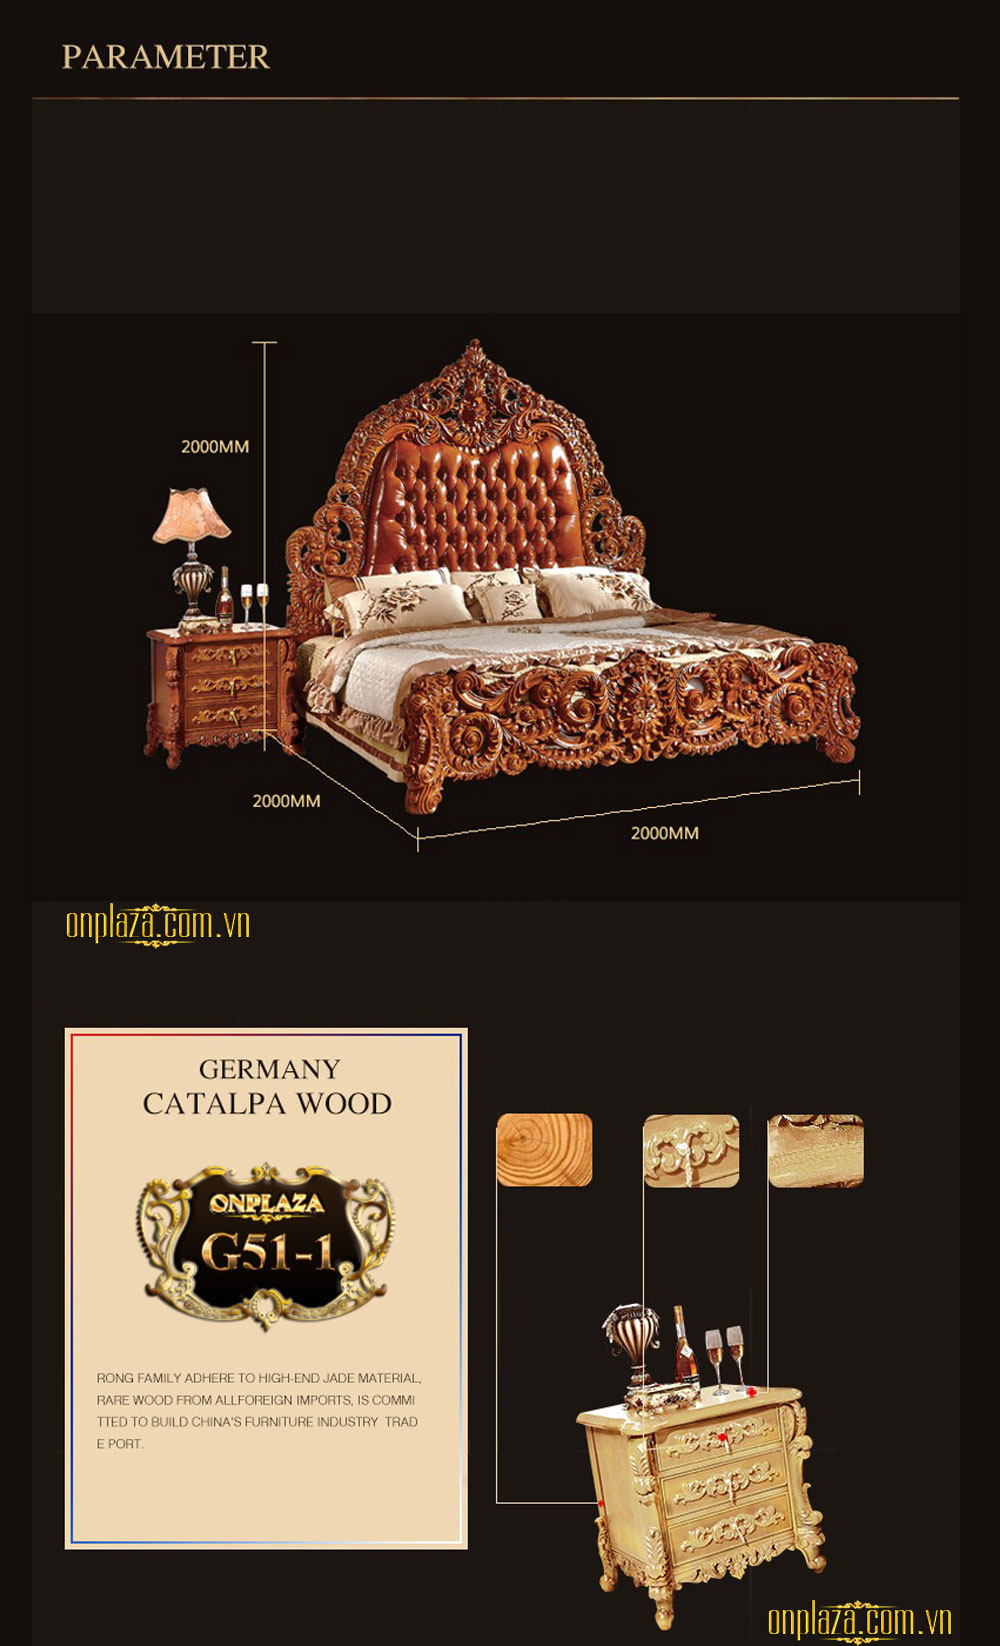 Bộ giường gỗ bọc nệm chạm khắc hoa văn phục cổ Hoàng gia cao cấp G51